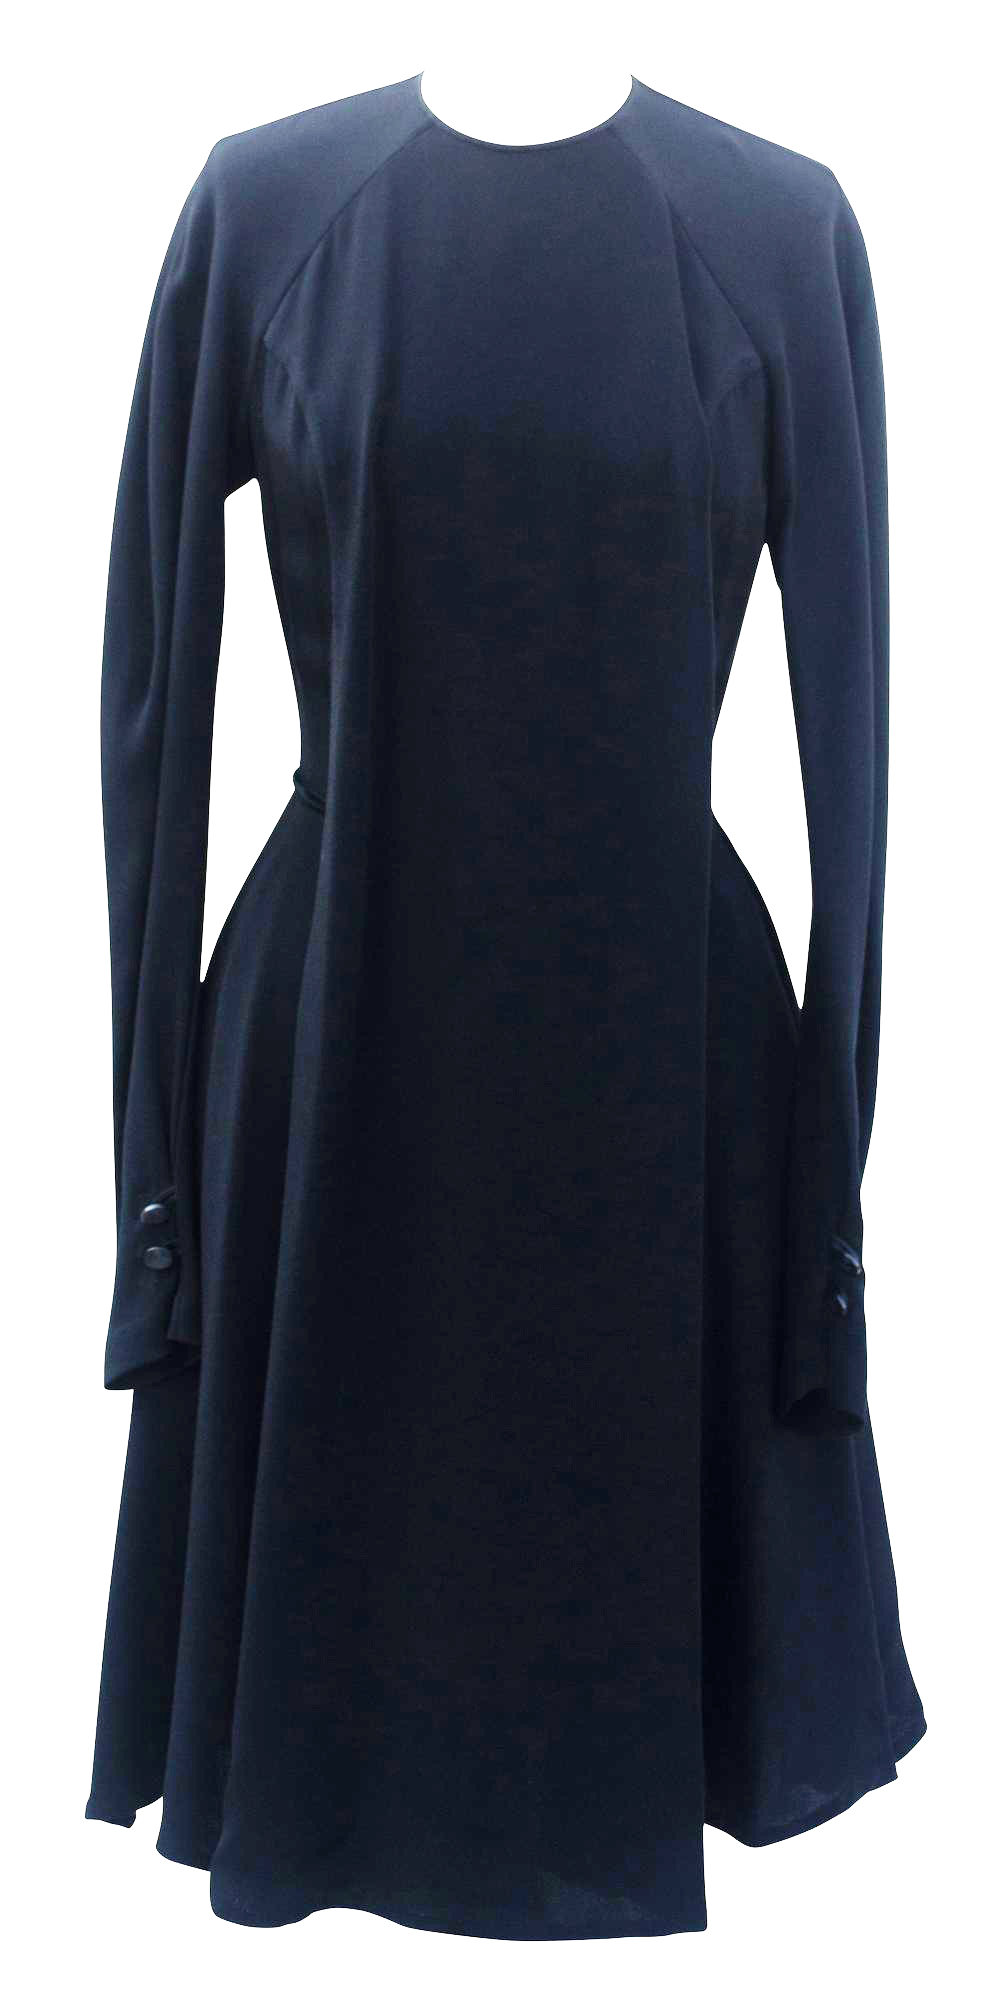 Vivienne Westwood FLARED DRESS Description:Flared Dress in silk crepe cady...